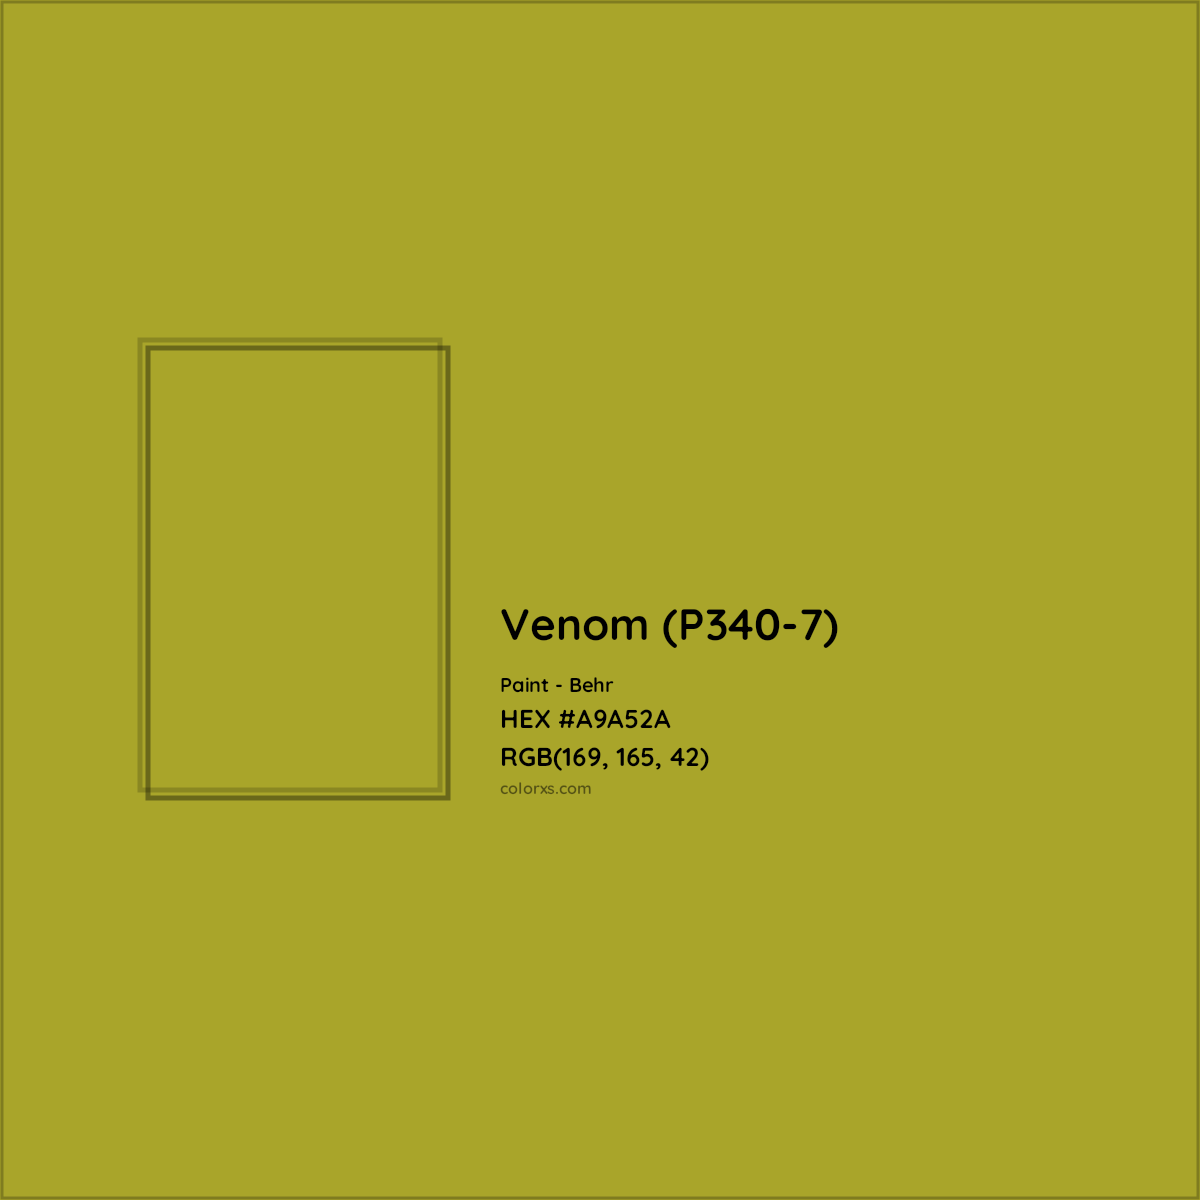 HEX #A9A52A Venom (P340-7) Paint Behr - Color Code